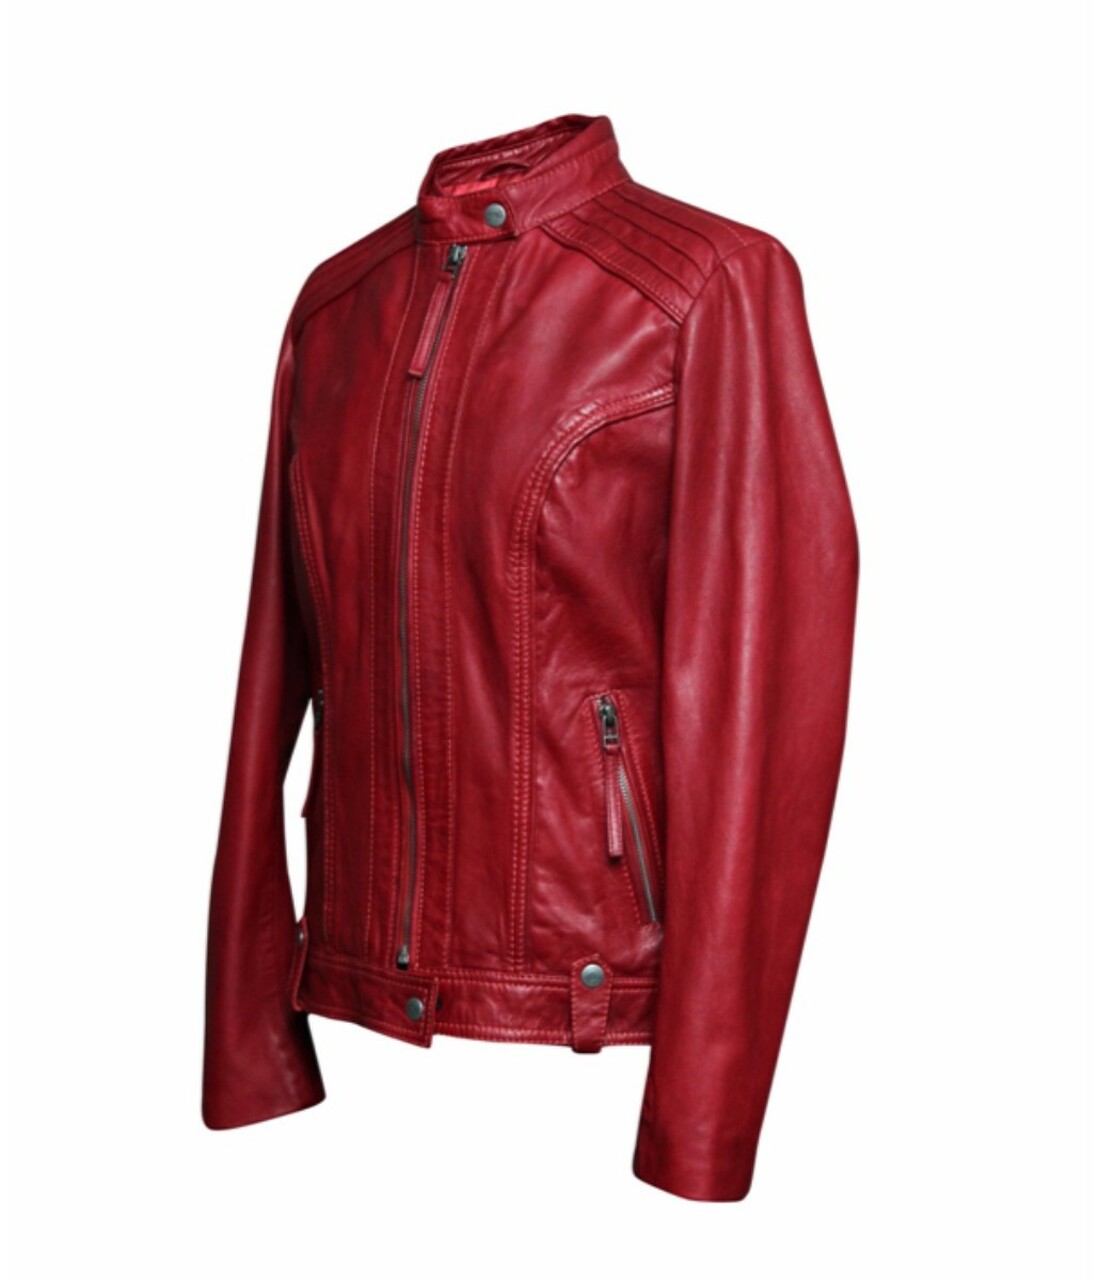 leather jacket women's leather jacket hot leather jacket red leather jacket natural leather jacket customize leather jacket low price leather jacket 2022 women's. leather jacket